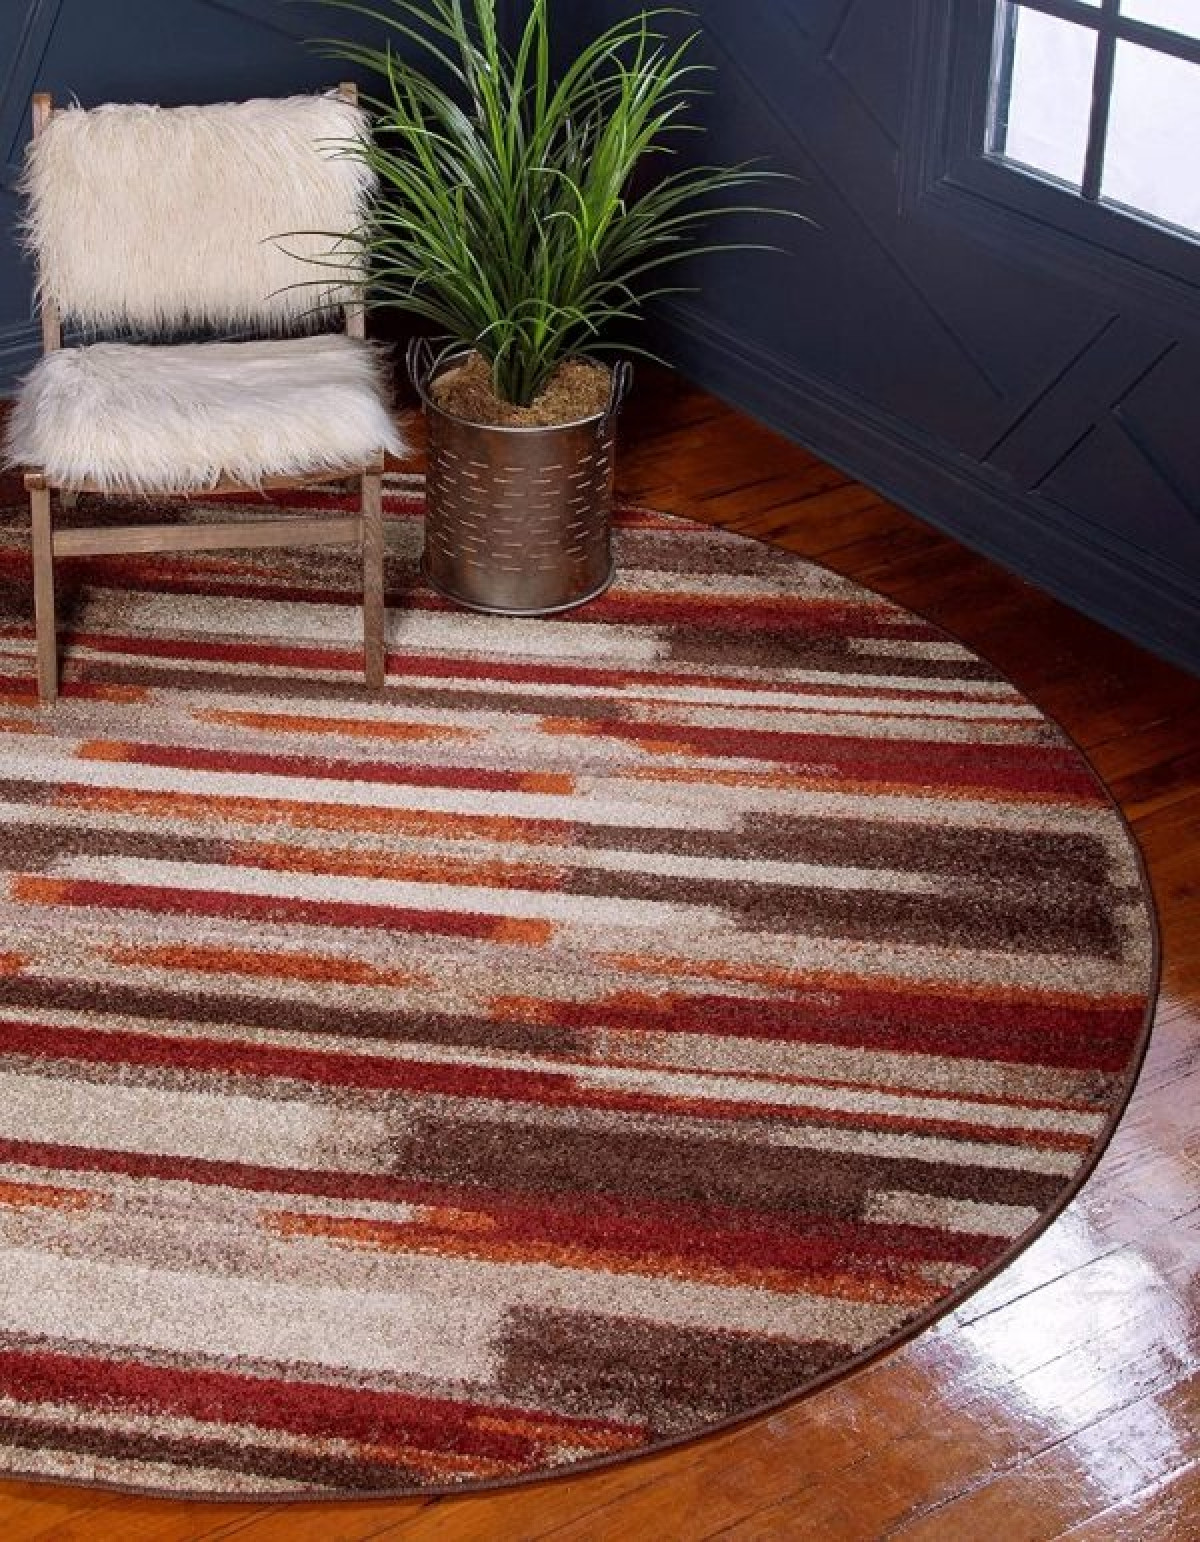 Tấm thảm màu đỏ loang nâu, trắng là điểm nhấn hoàn hảo, tạo sự ấm áp, sang trọng cho căn phòng.